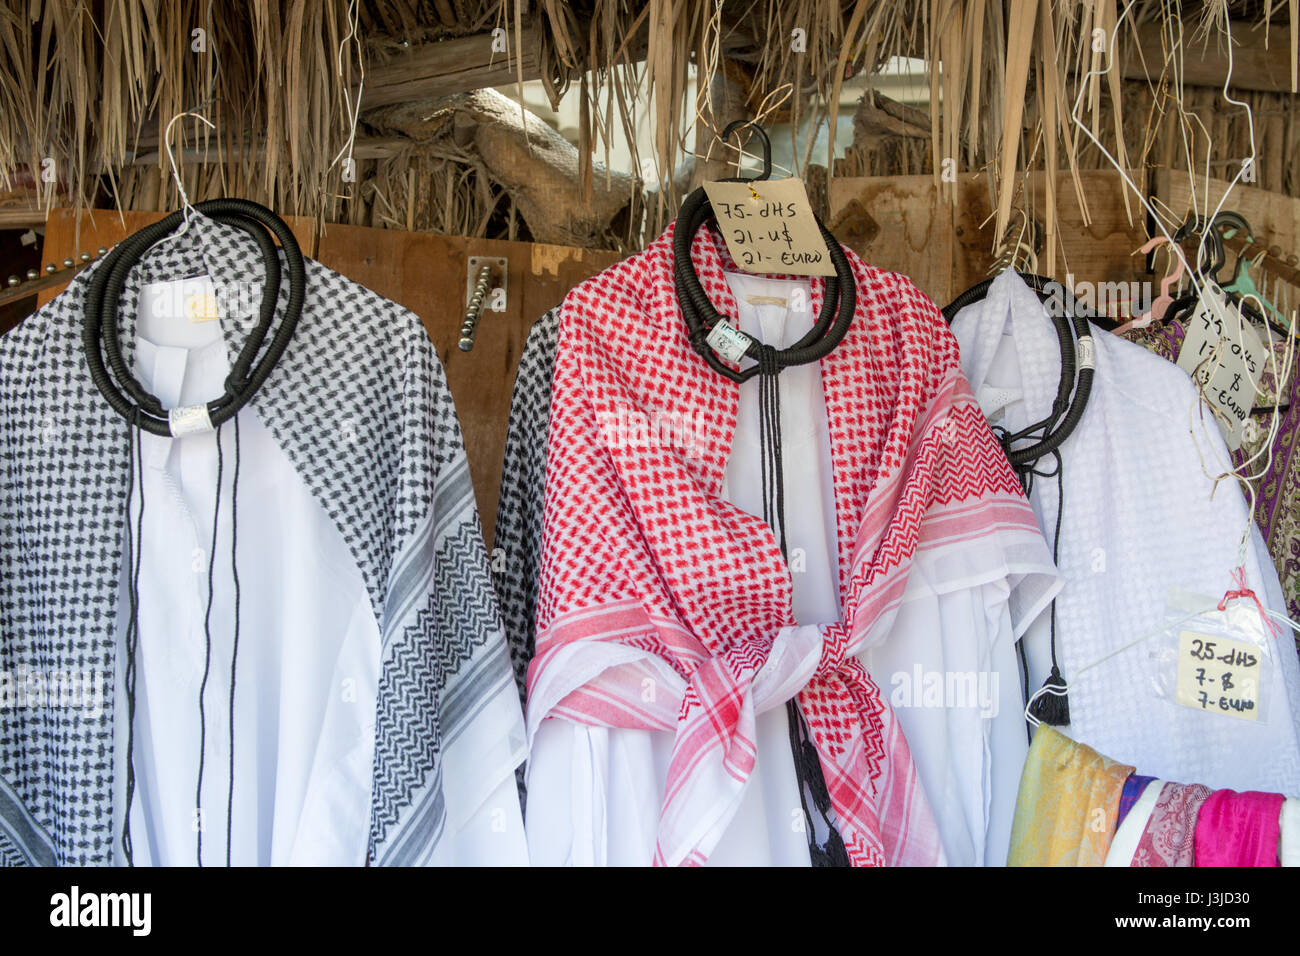 Emiratos Árabes Unidos - venta de ropa tradicional árabe en Abu Dhabi Foto de stock